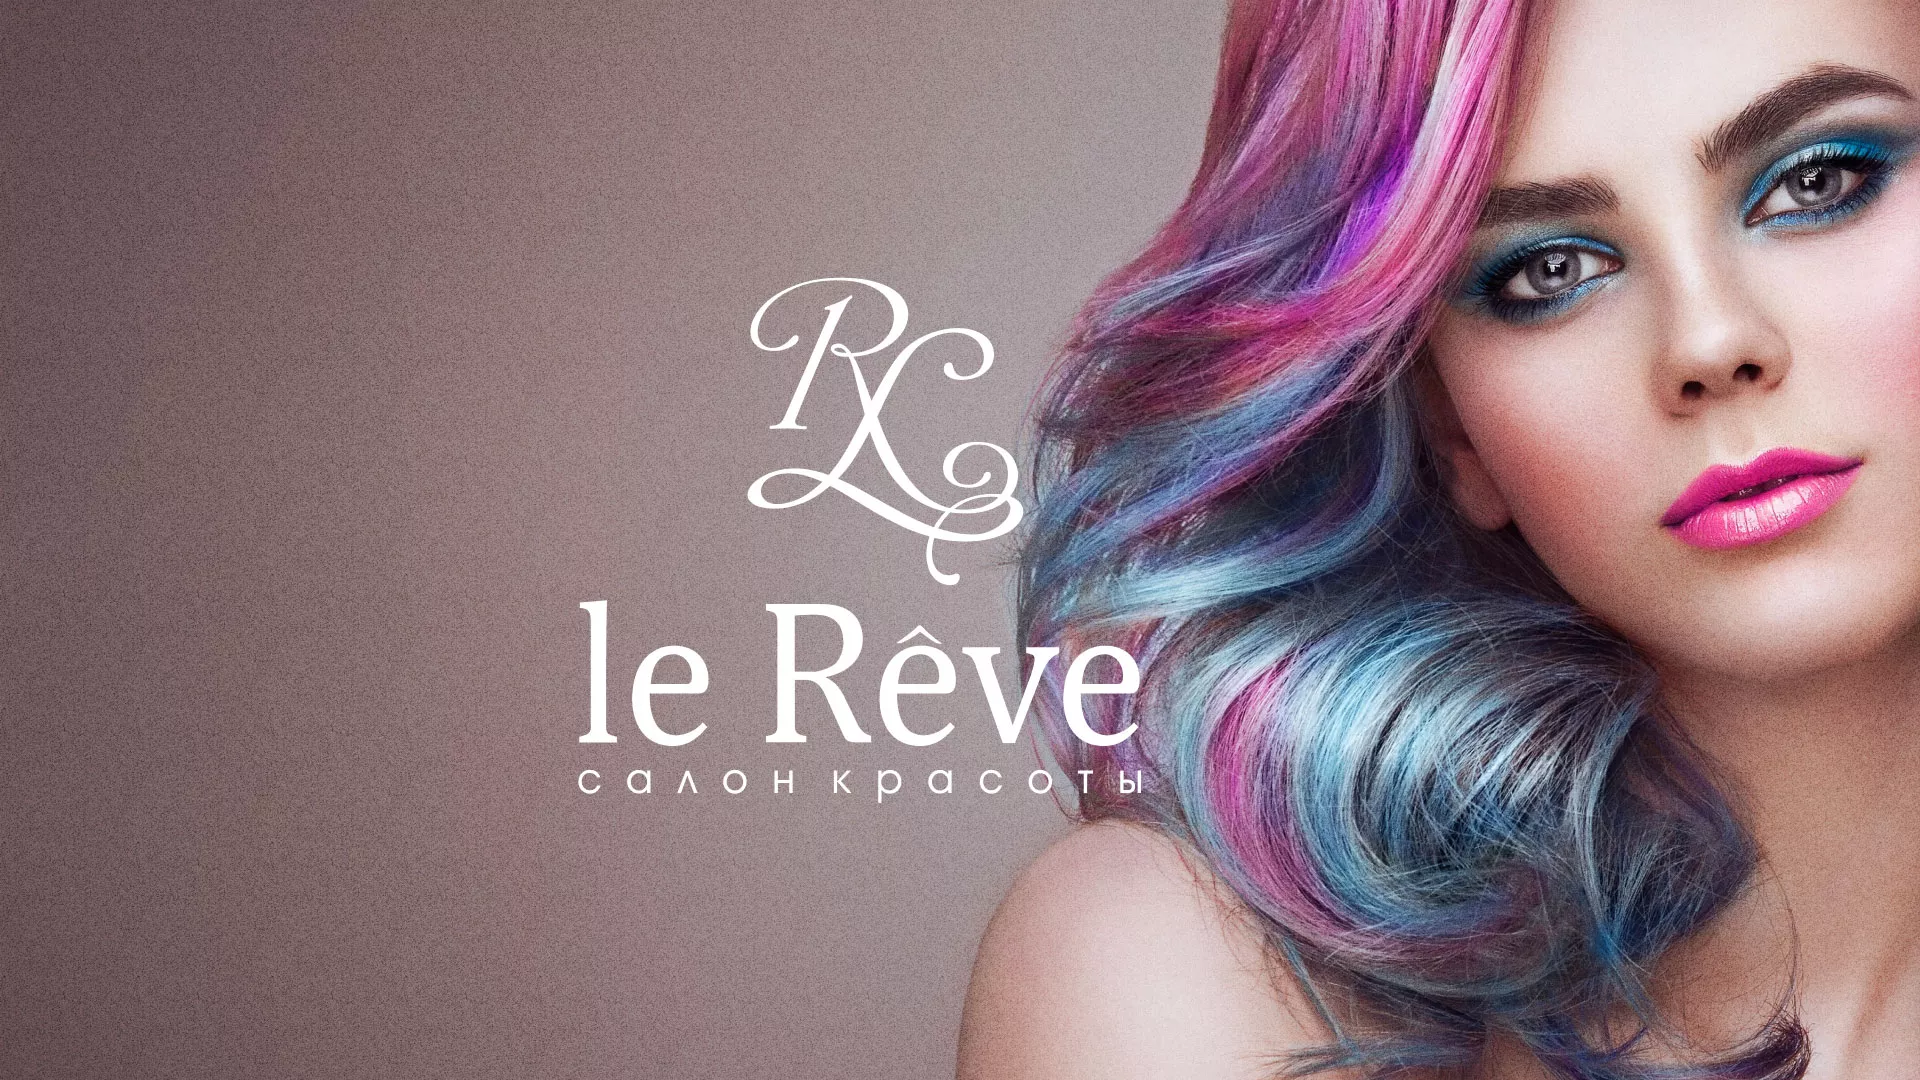 Создание сайта для салона красоты «Le Reve» в Каменск-Шахтинске